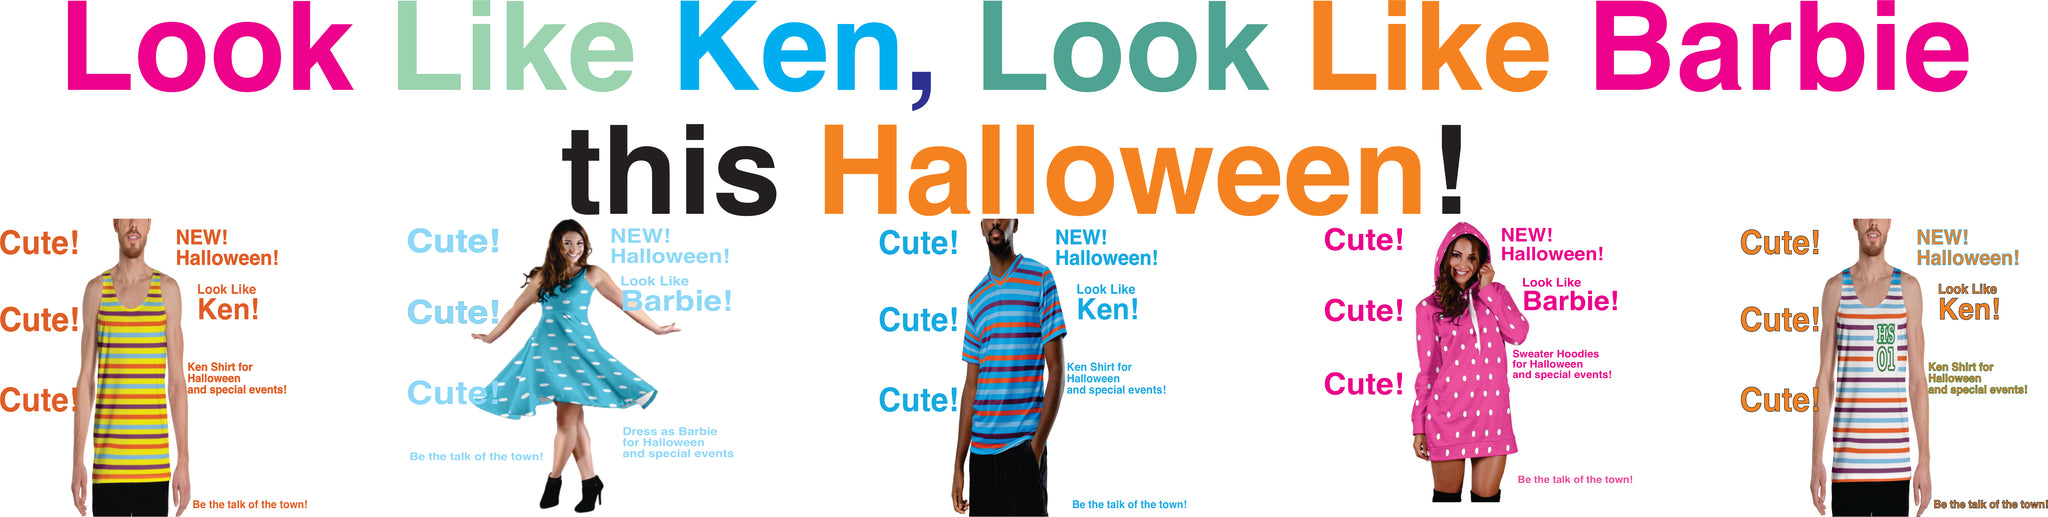 look like ken, look like barbie ad page